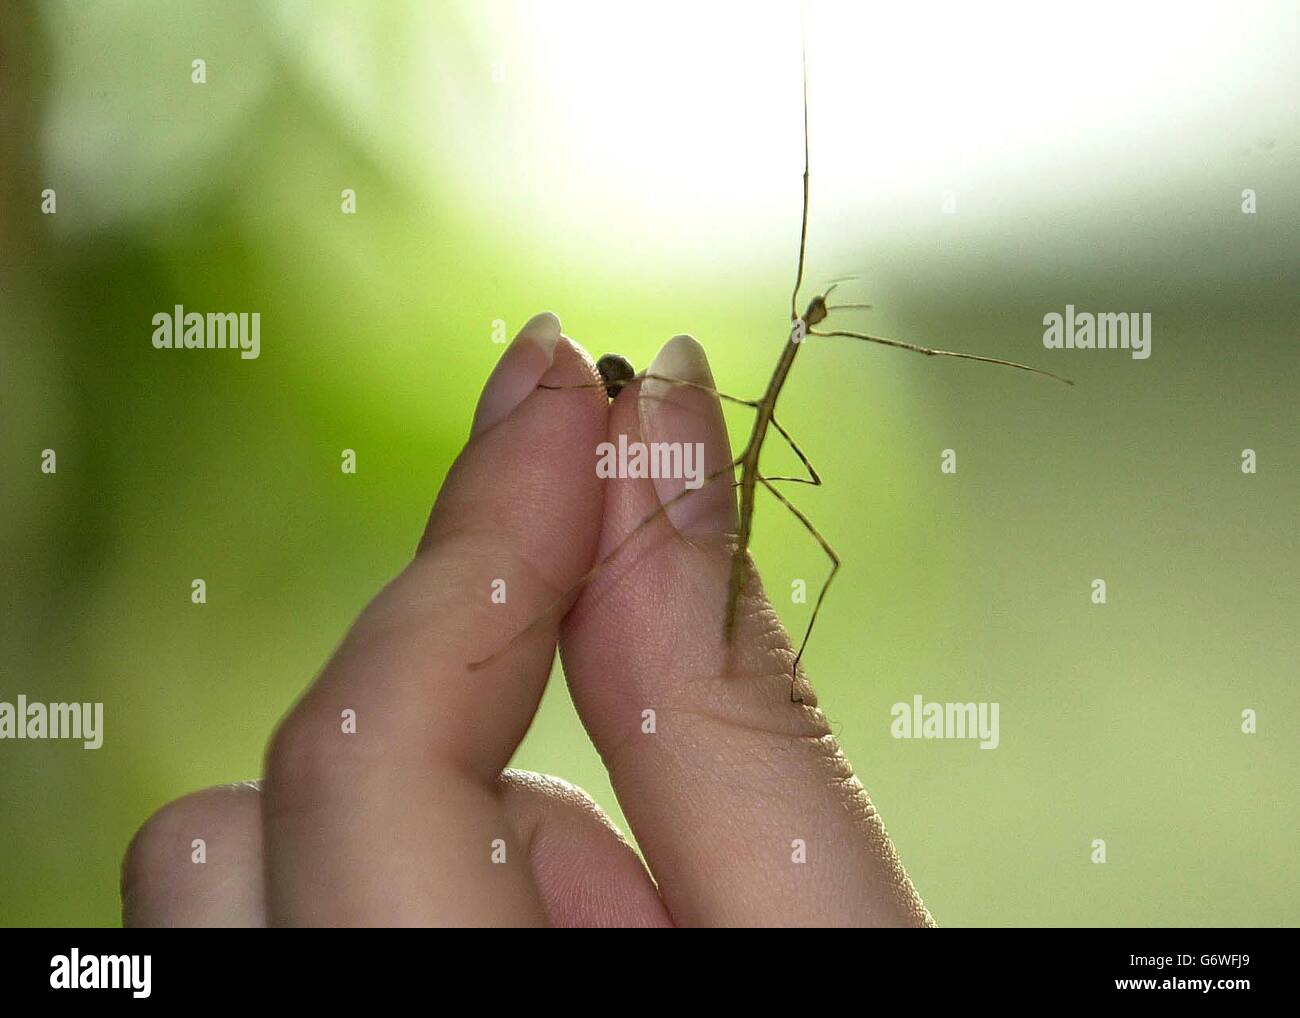 Un bébé insecte géant malaisien bâton, mesurant 60 mm de long, et l'oeuf de 4 mm dont il a éclos, est dévoilé au zoo de Londres. L'insecte, surnommé « Twiggy » par le personnel du zoo, devrait grandir jusqu'à 555 mm (22 pouces) quand elle atteint la maturité, dans six mois. Twiggy est l'un des vingt insectes géants qui ont éclos jusqu'à présent d'un lot fourni par le zoo de Rotterdam et fera partie d'un nouveau groupe d'élevage pour exposition au centre de biodiversité du zoo. Banque D'Images